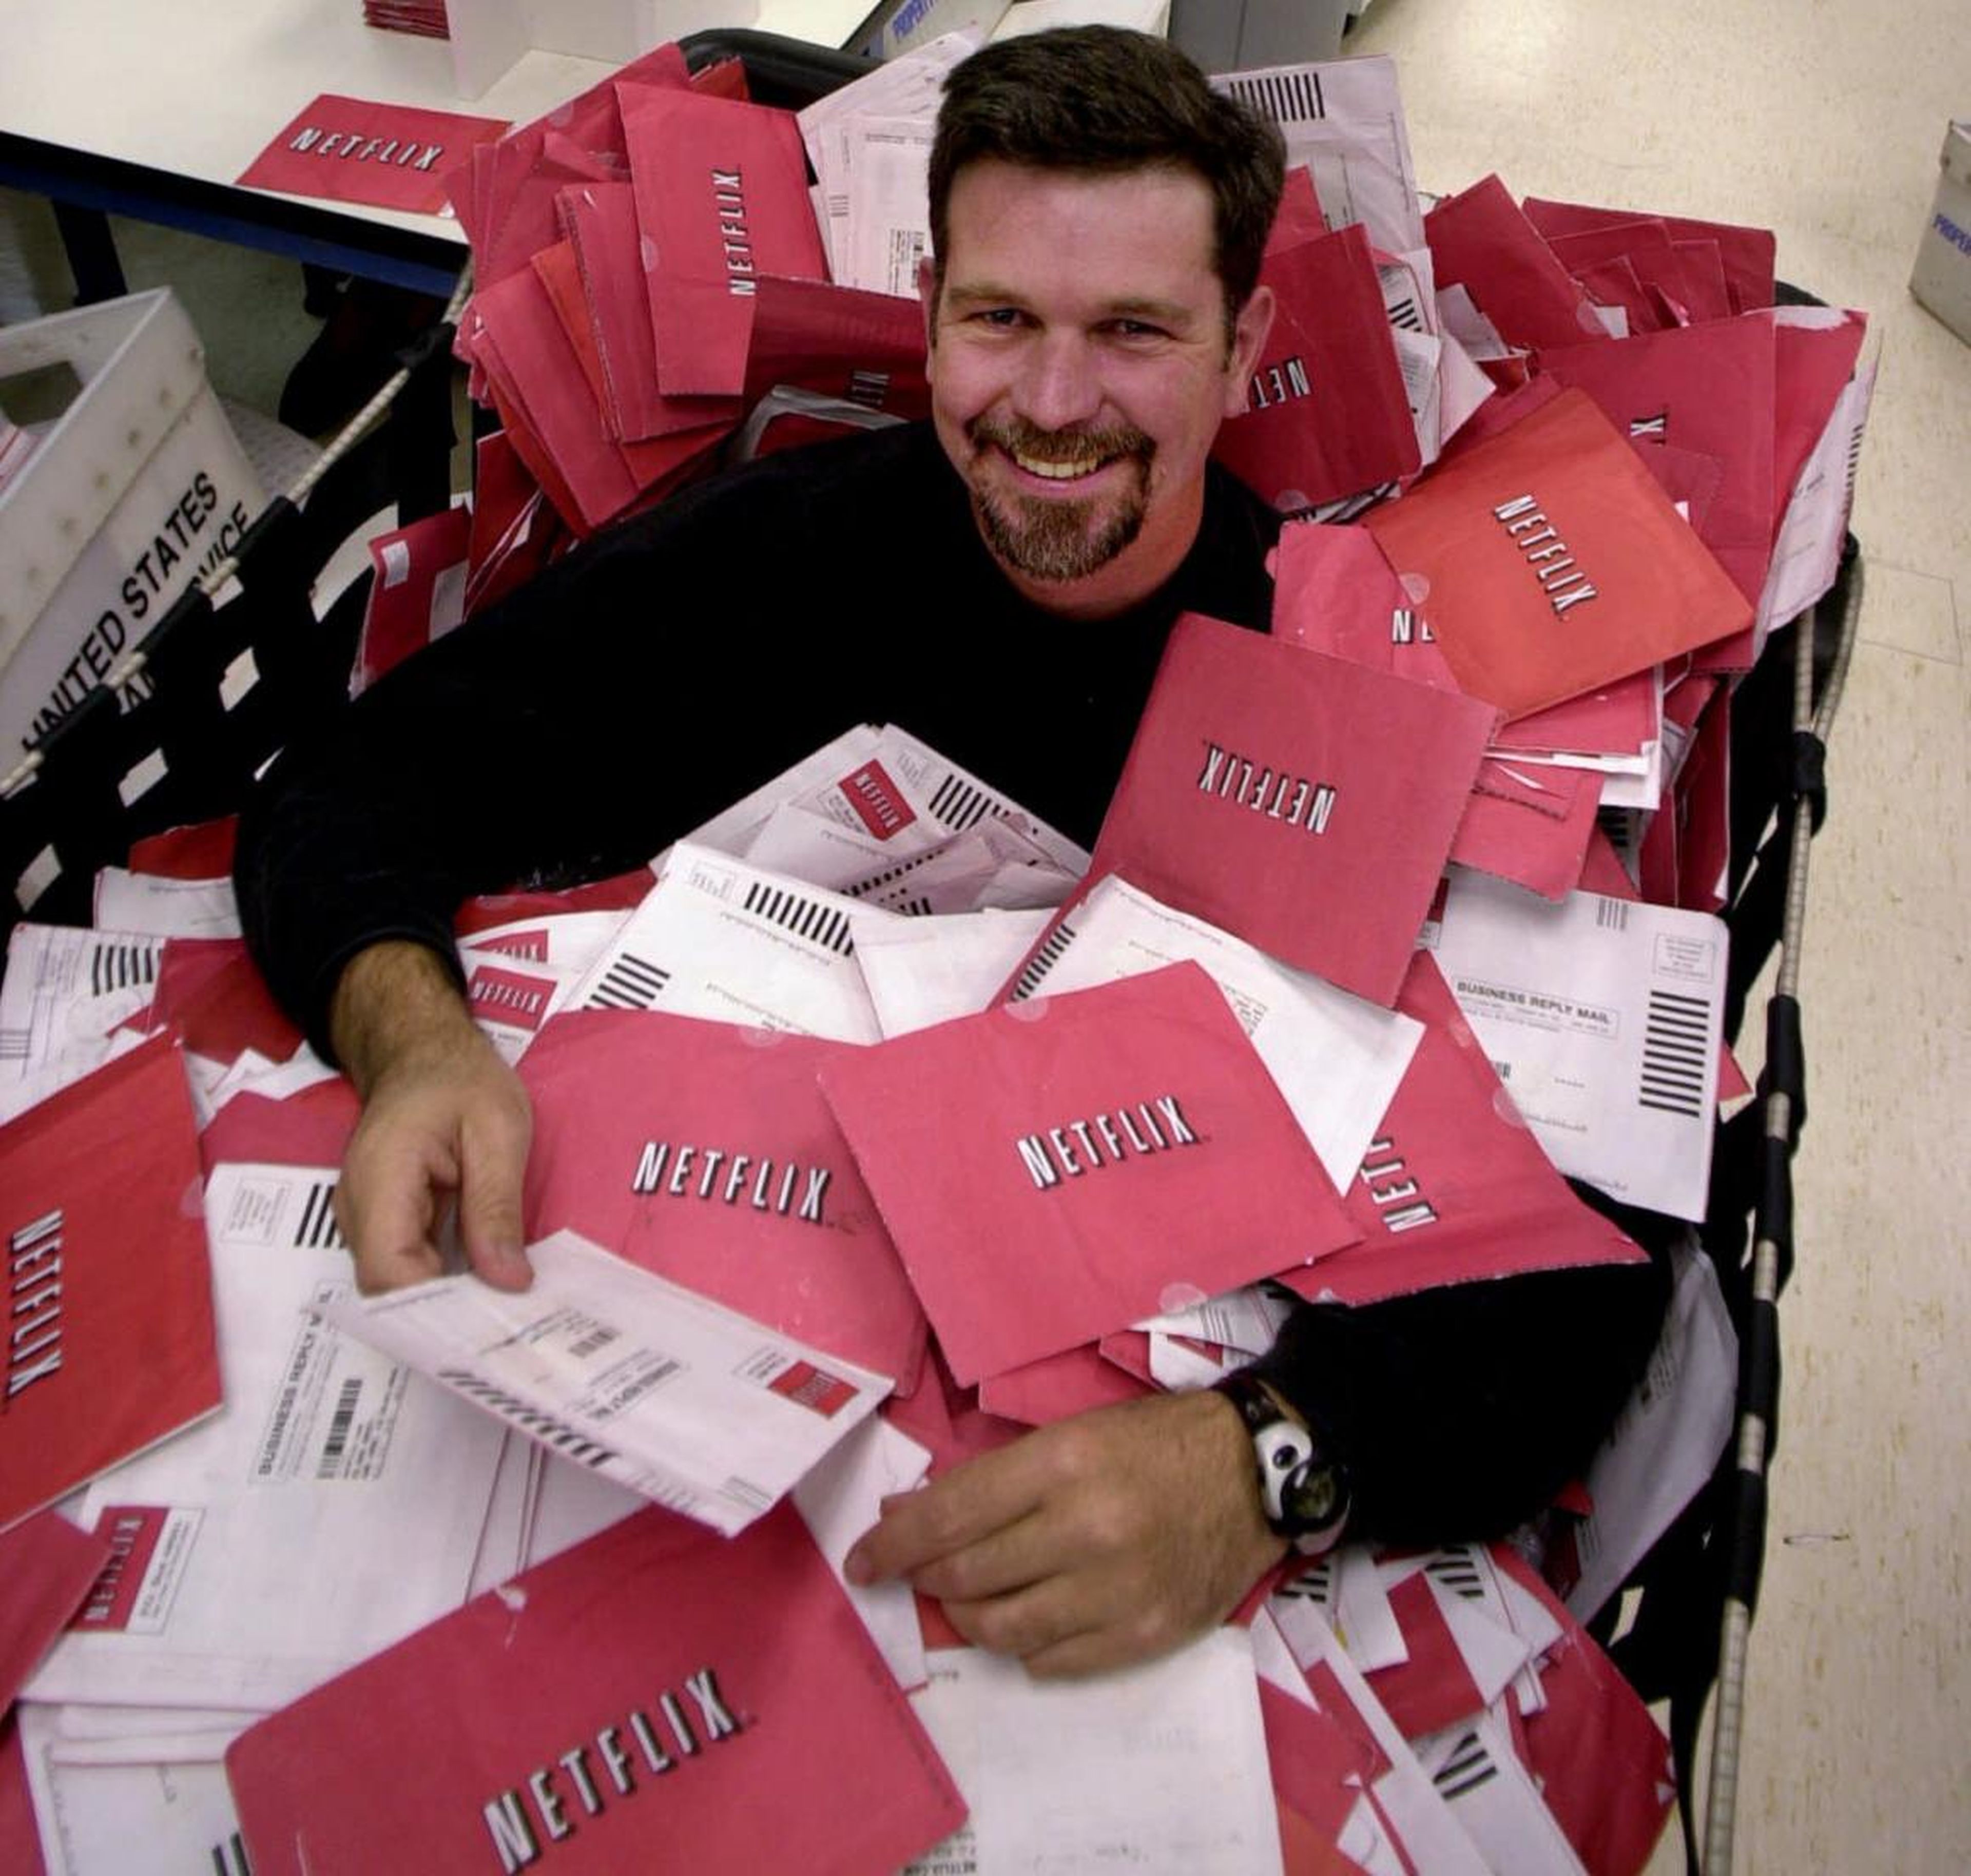 Aquí vemos los correos de devolución de los DVD de Netflix en un buzón de Encinitas, California, el 21 de octubre de 2013.